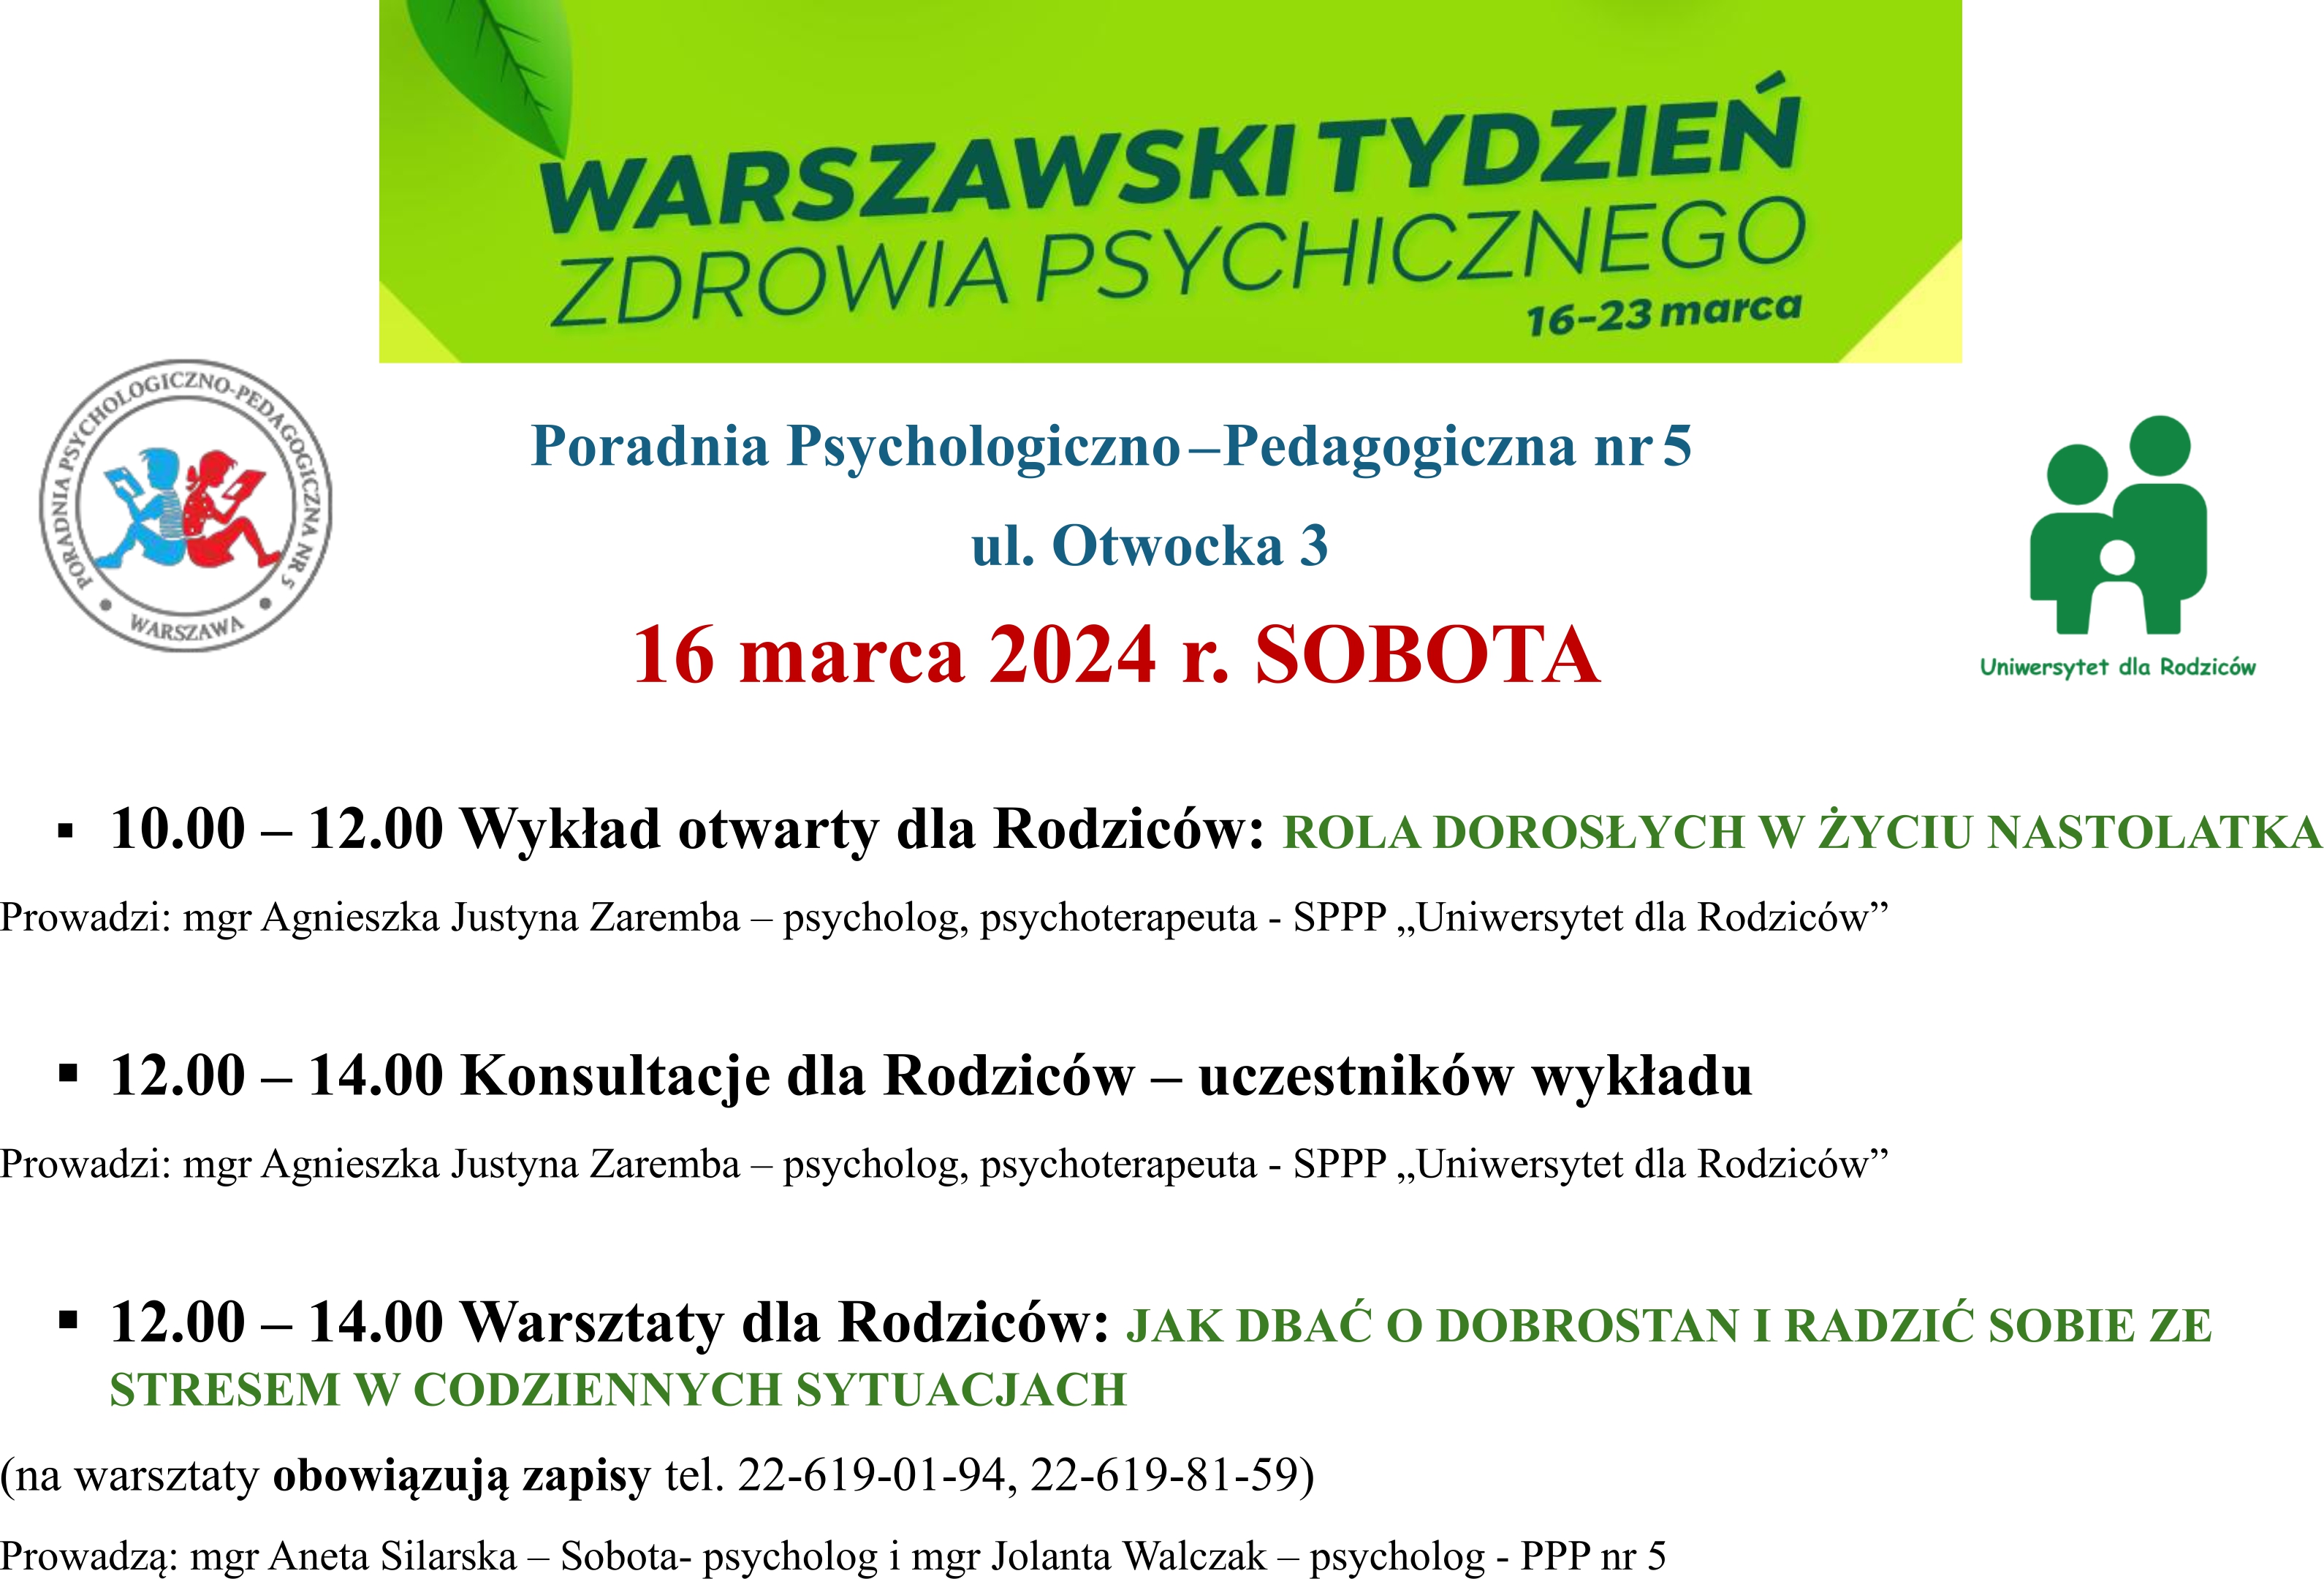 Warszawski Tydzień Zdrowia Psychicznego - zaproszenie na warsztaty